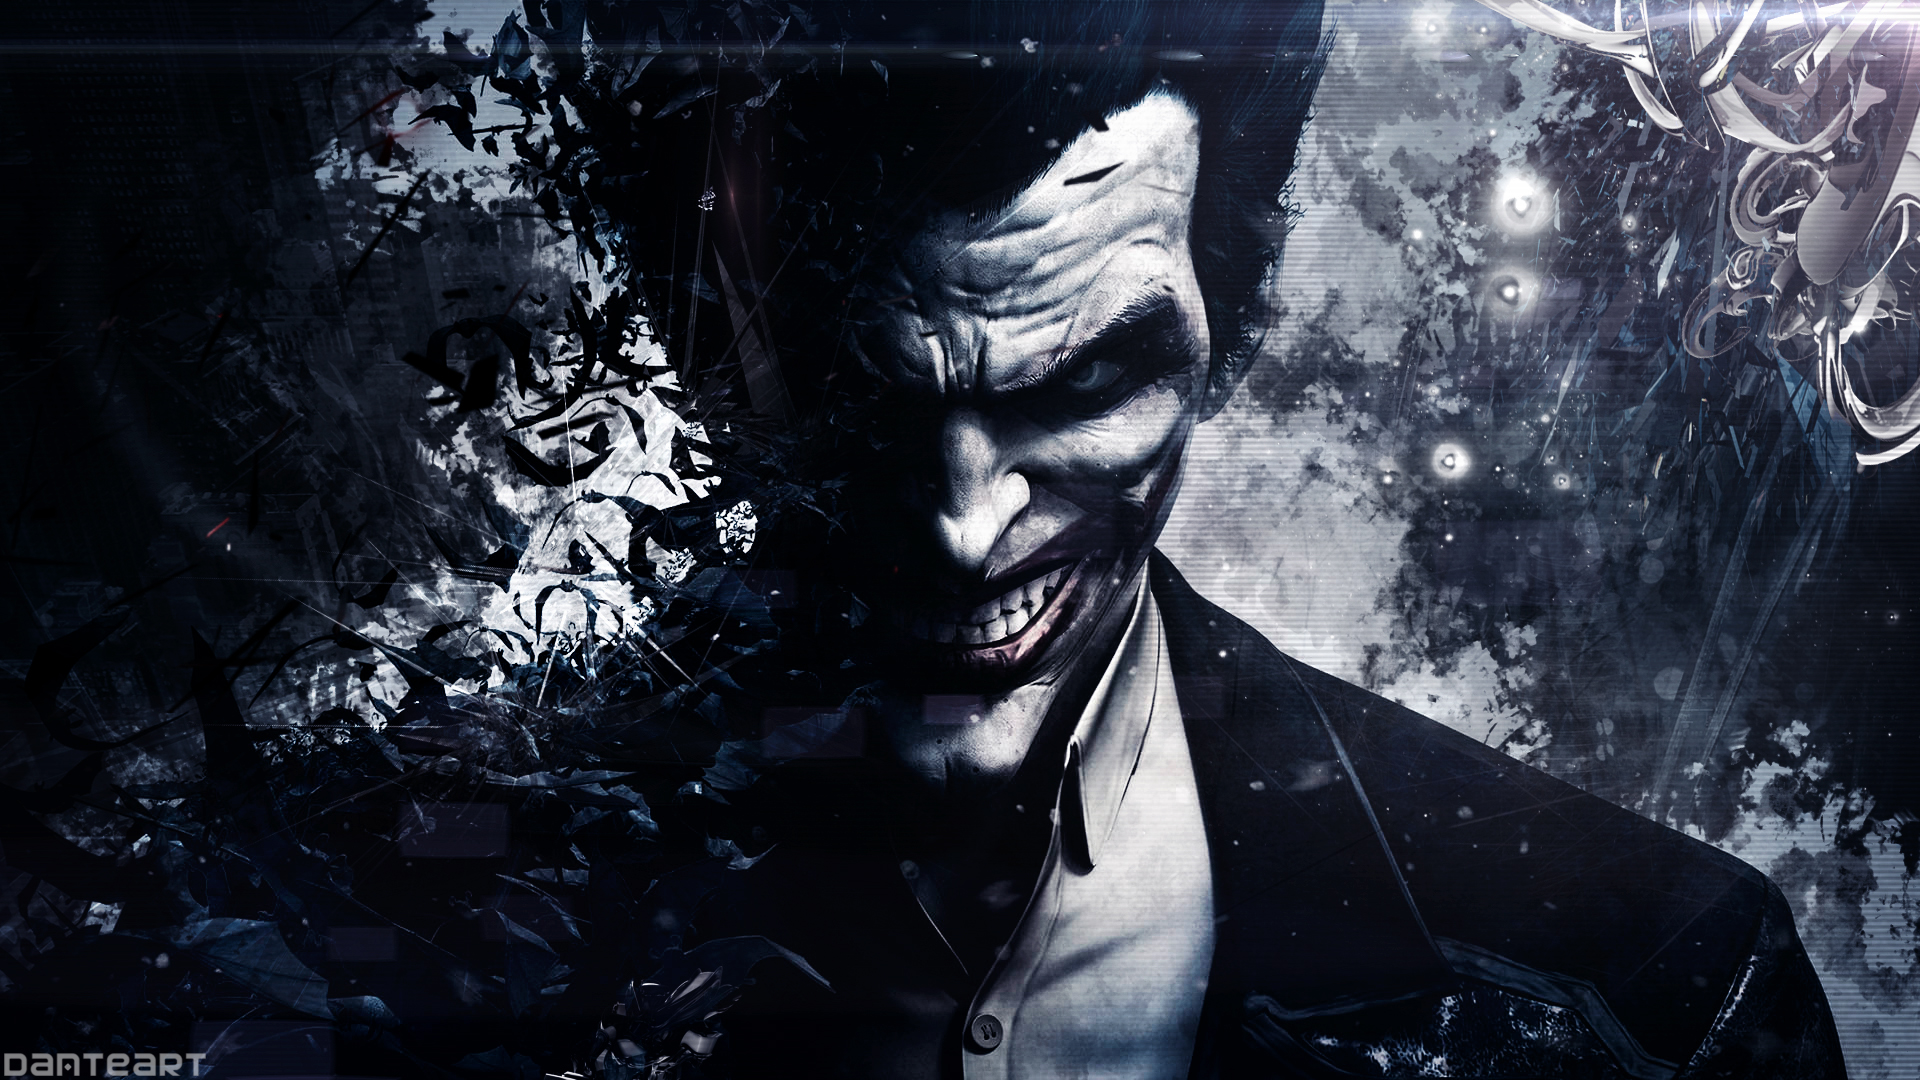 Wallpaper Batman Joker Origins Arkham Art D6runzh